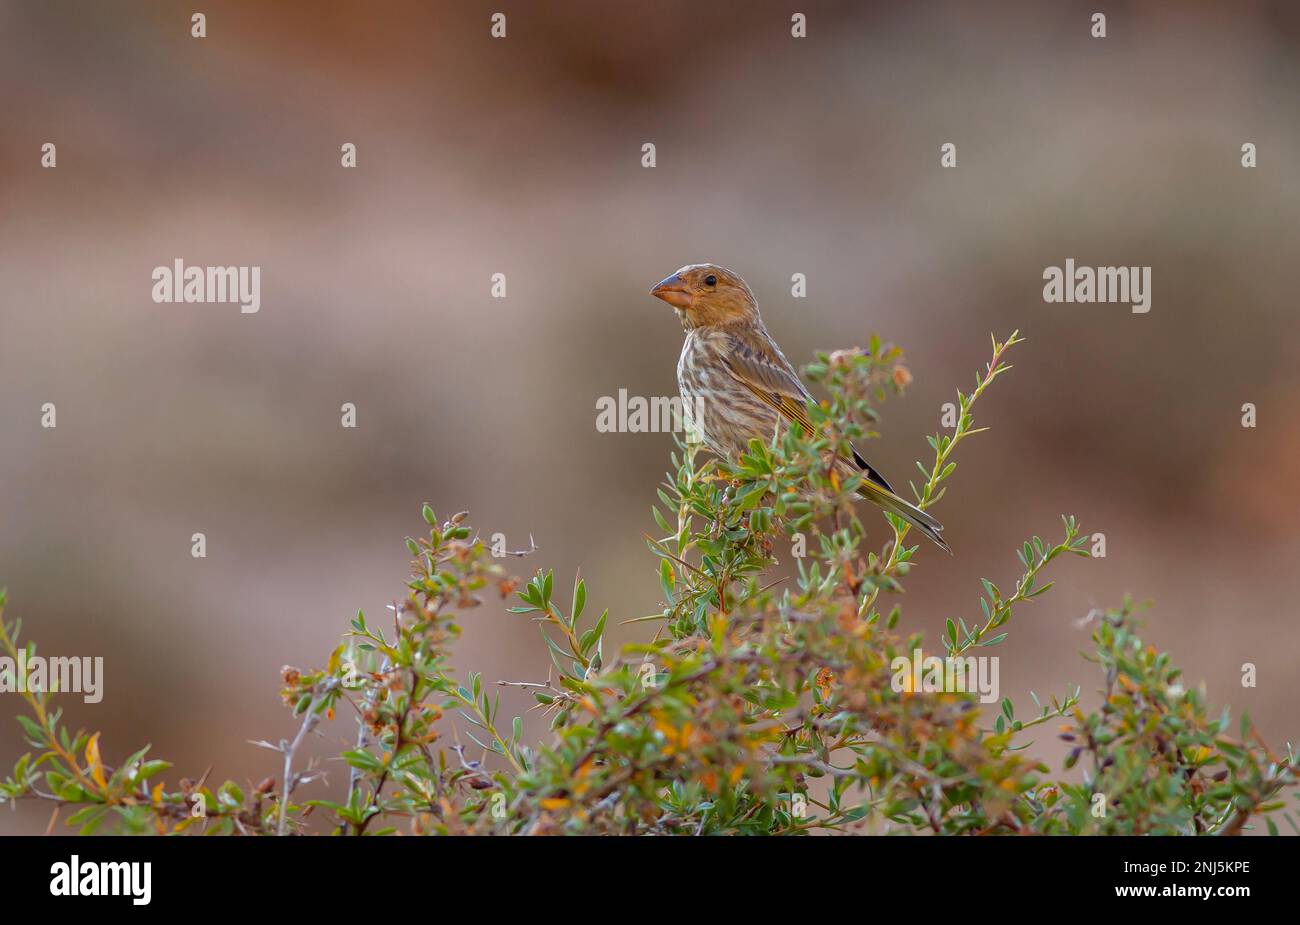 Vögel, die sich im Wald umsehen, Rotfronten-Serin, Serinus pusillus Stockfoto